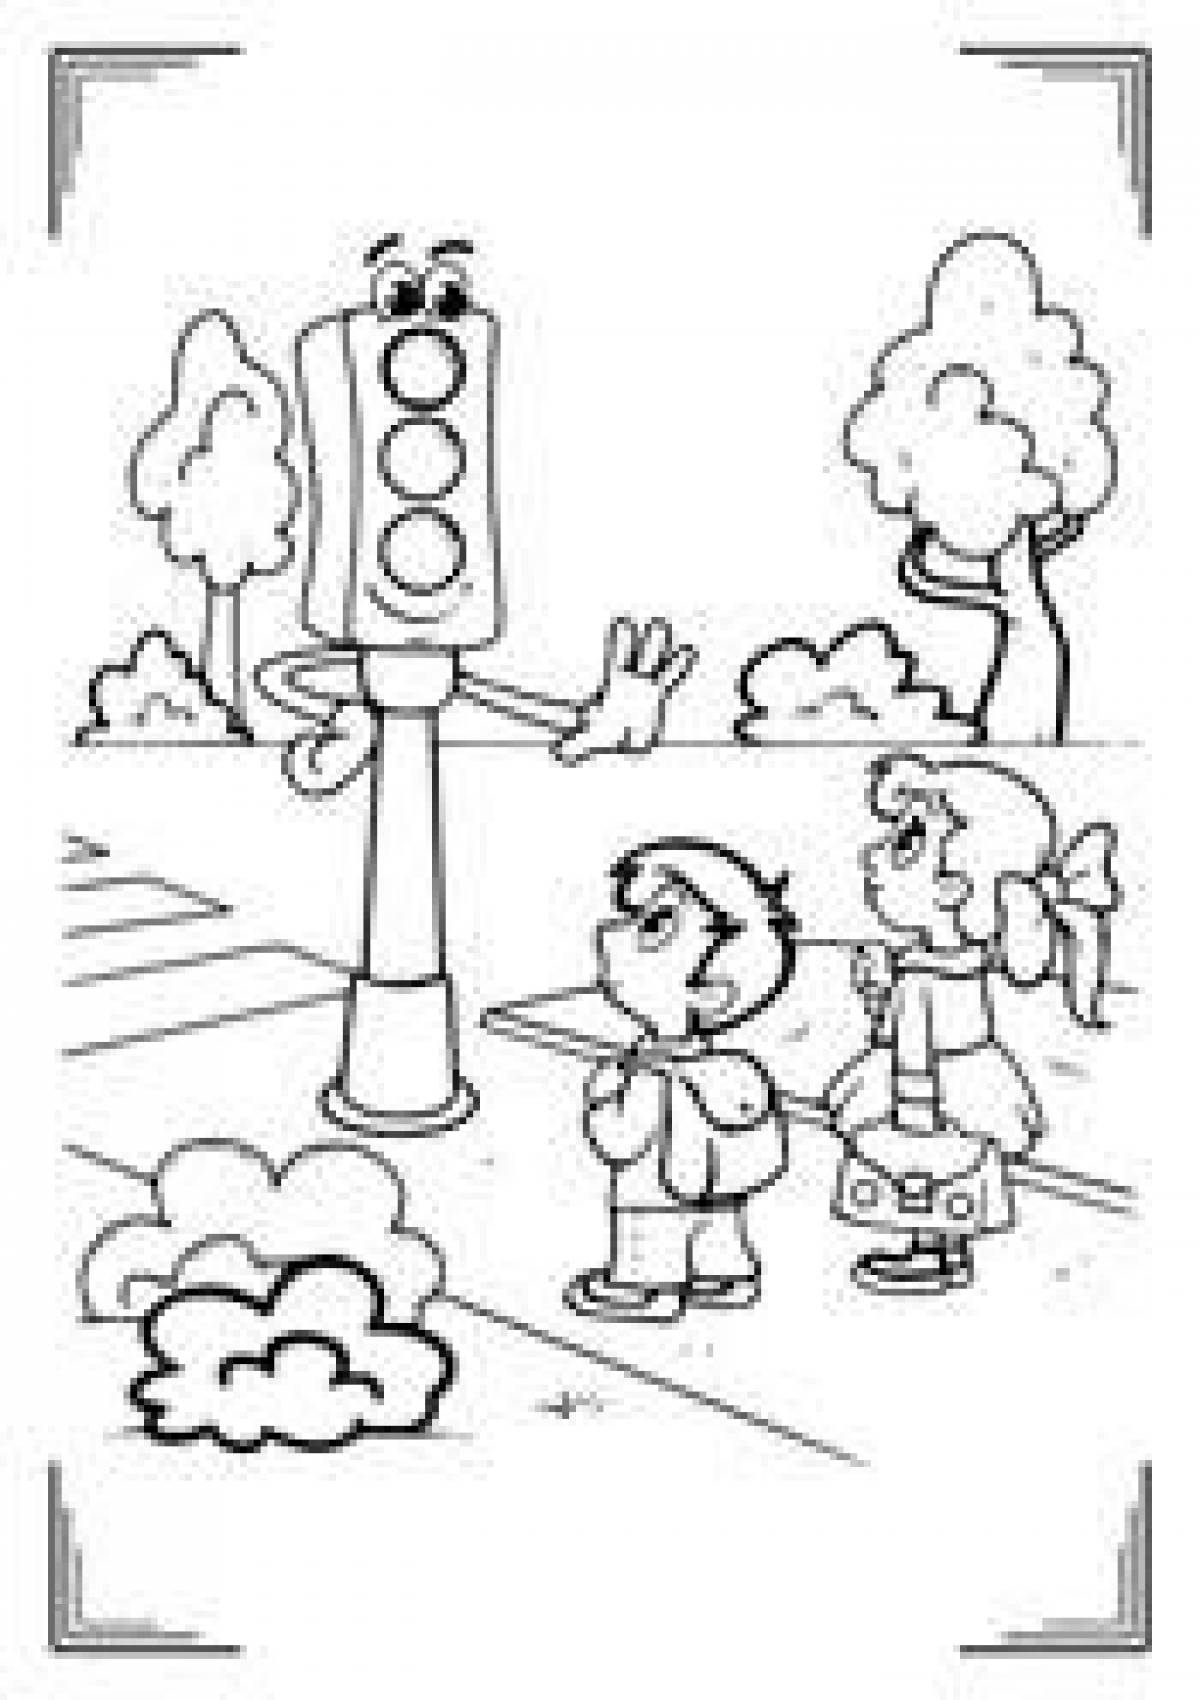 Traffic light for children 6 7 years old #19